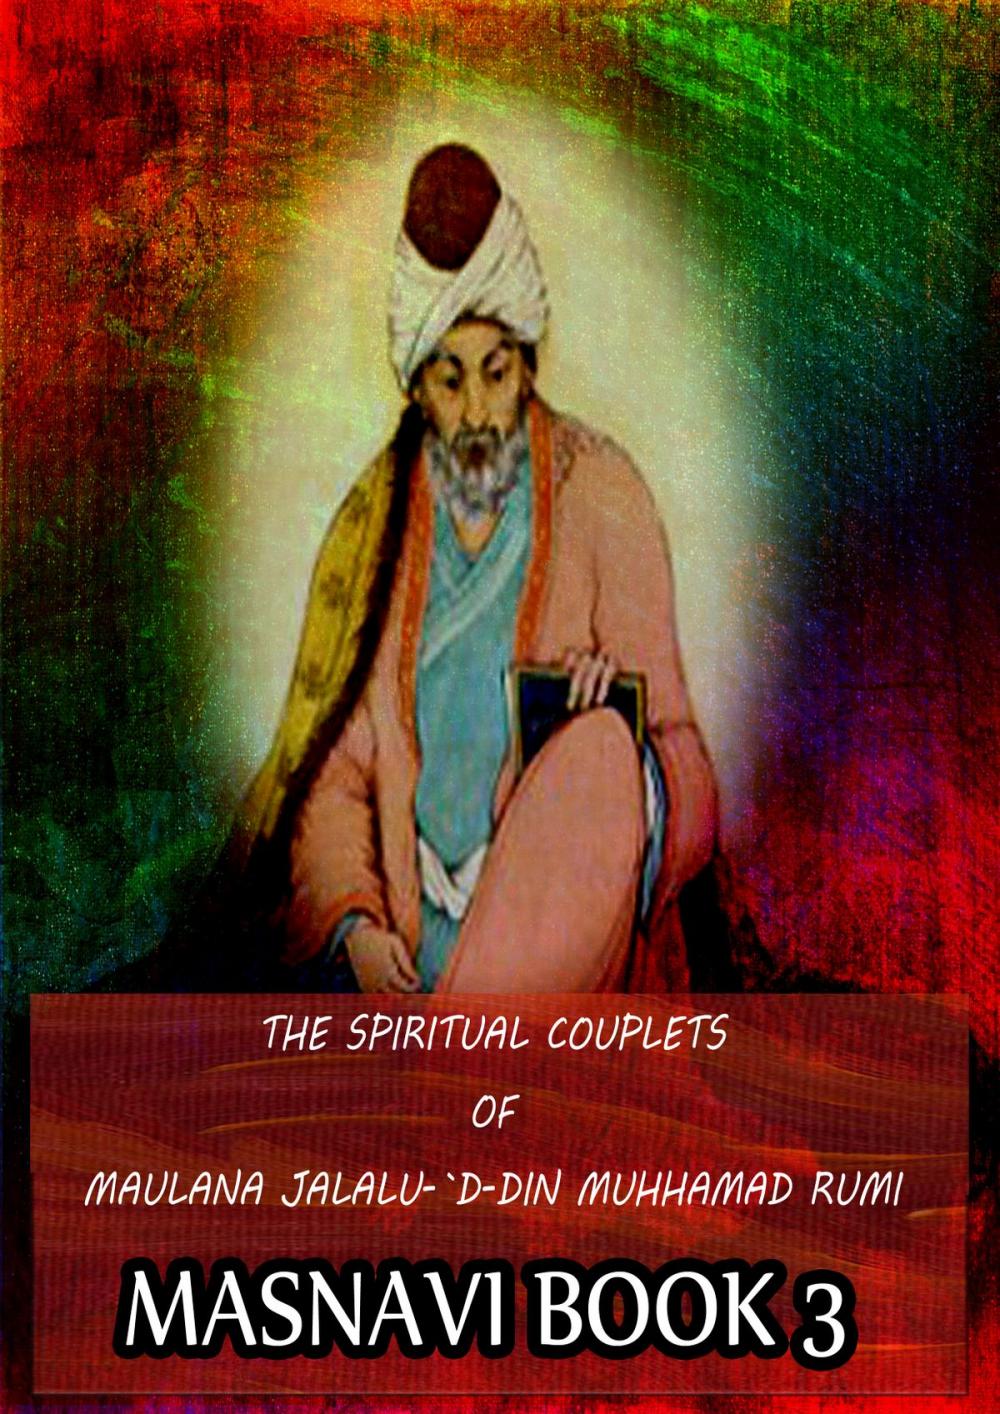 Big bigCover of THE SPIRITUAL COUPLETS OF MAULANA JALALU-'D-DlN MUHAMMAD RUMI Masnavi Book 3